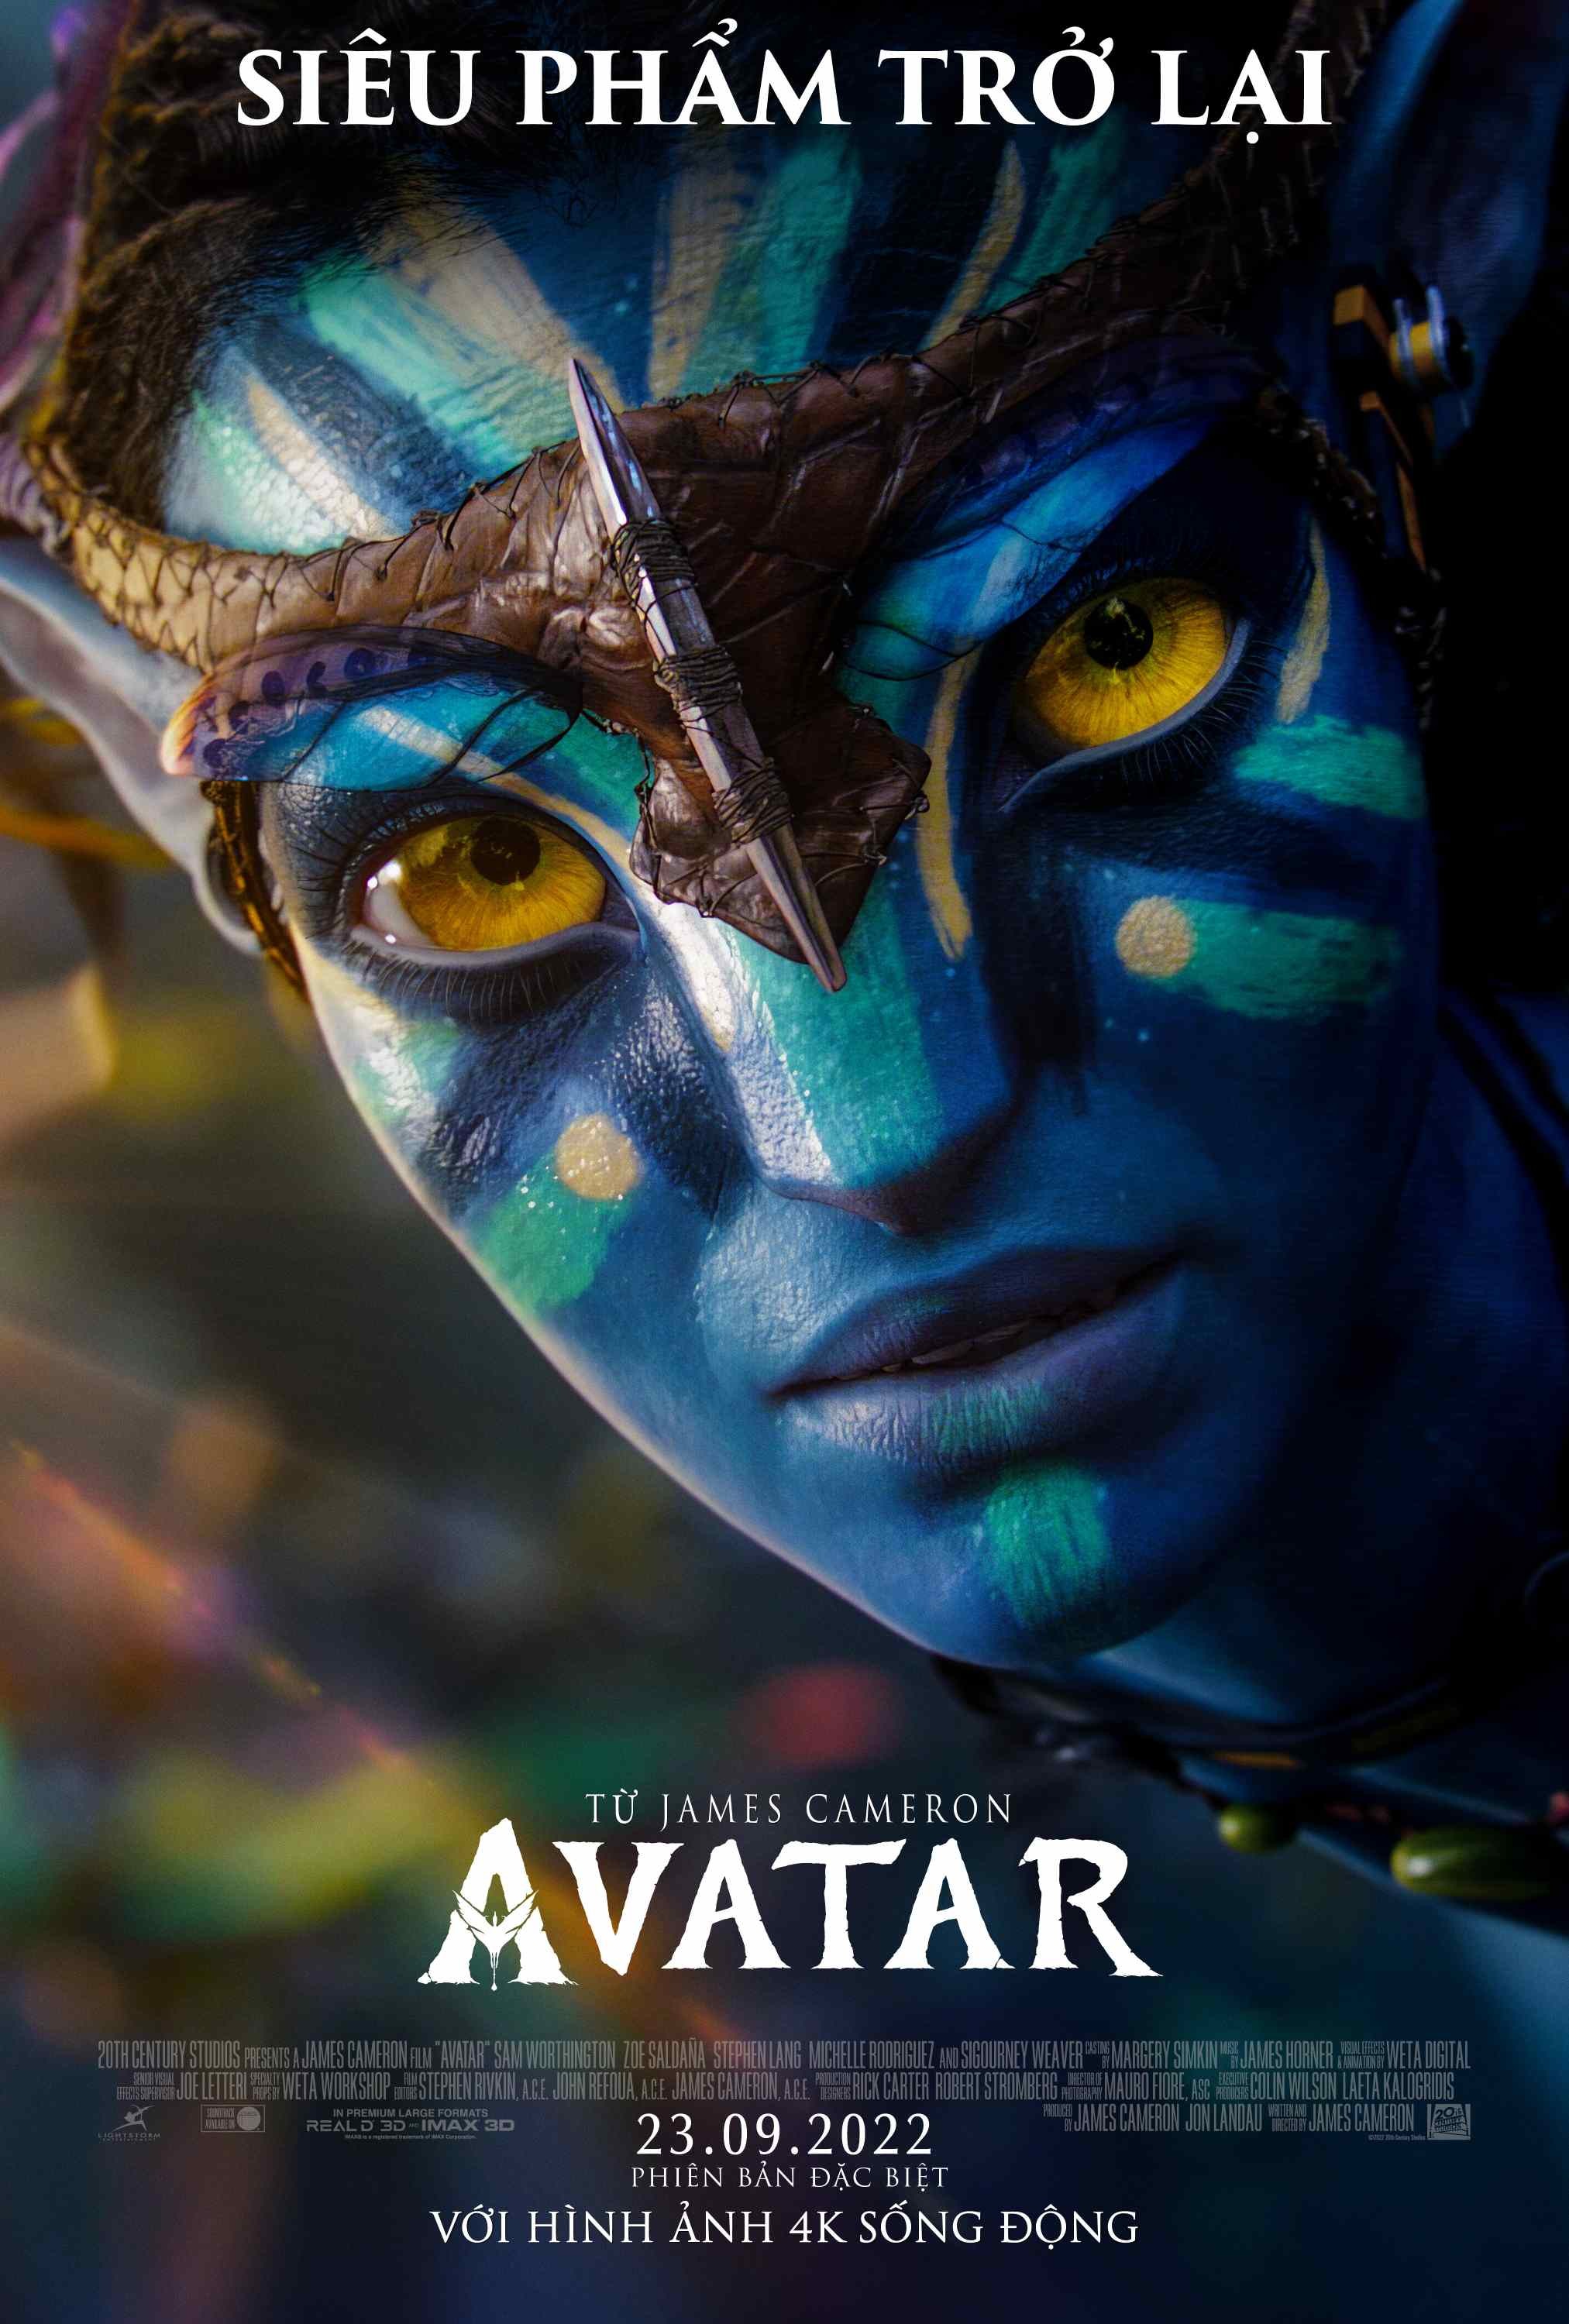 Thông Tin Chi Tiết Về Phim Avatar 2: Dòng Chảy Của Nước